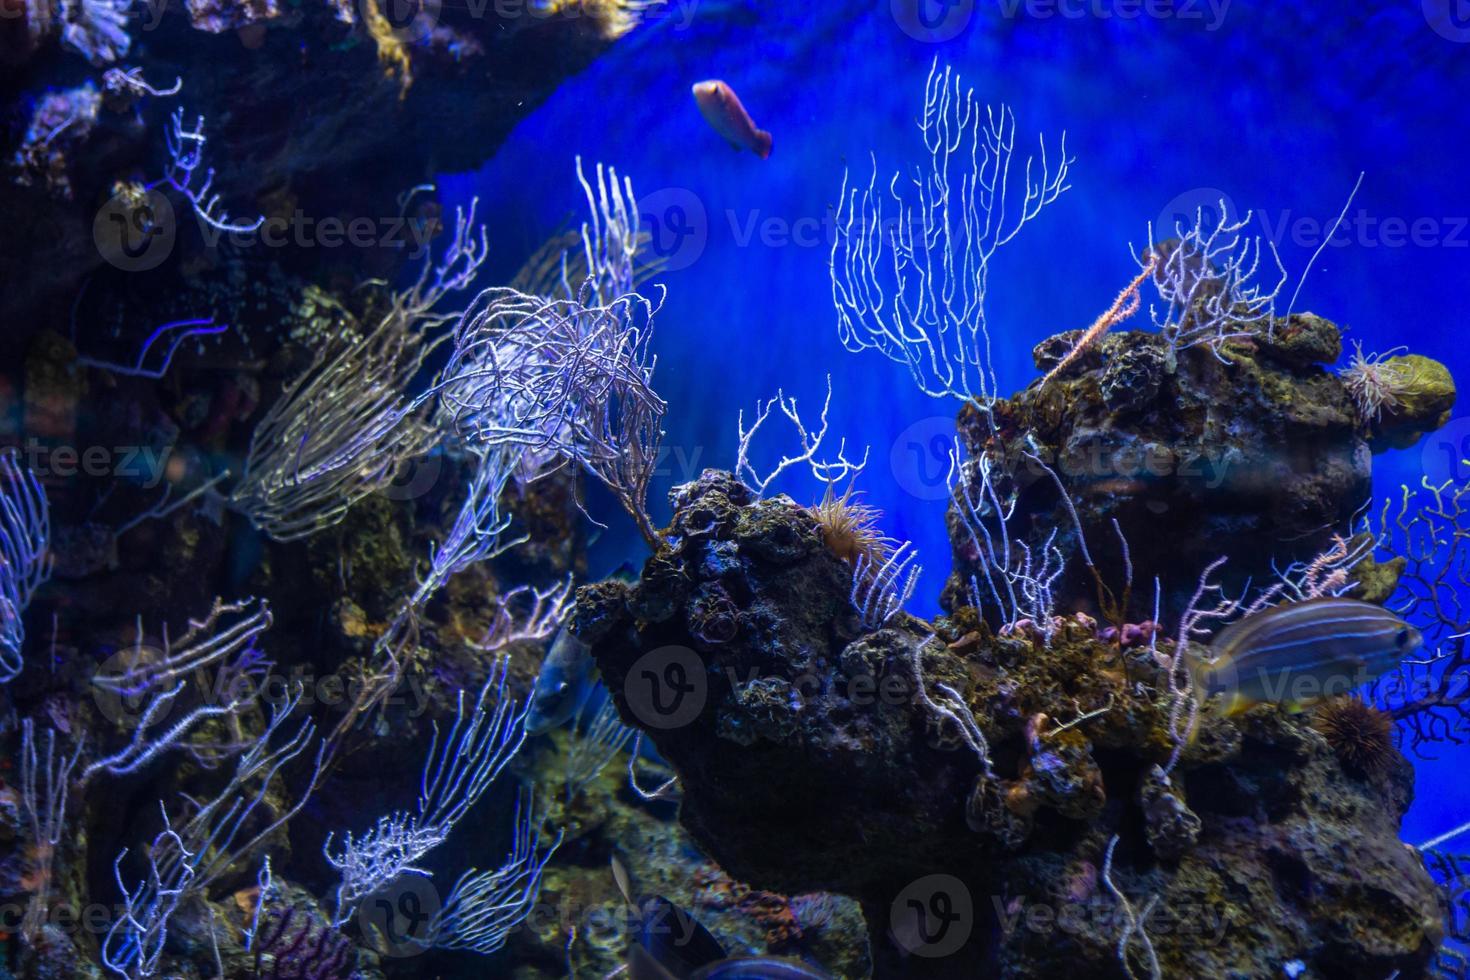 annorlunda tropisk fisk under vatten foto